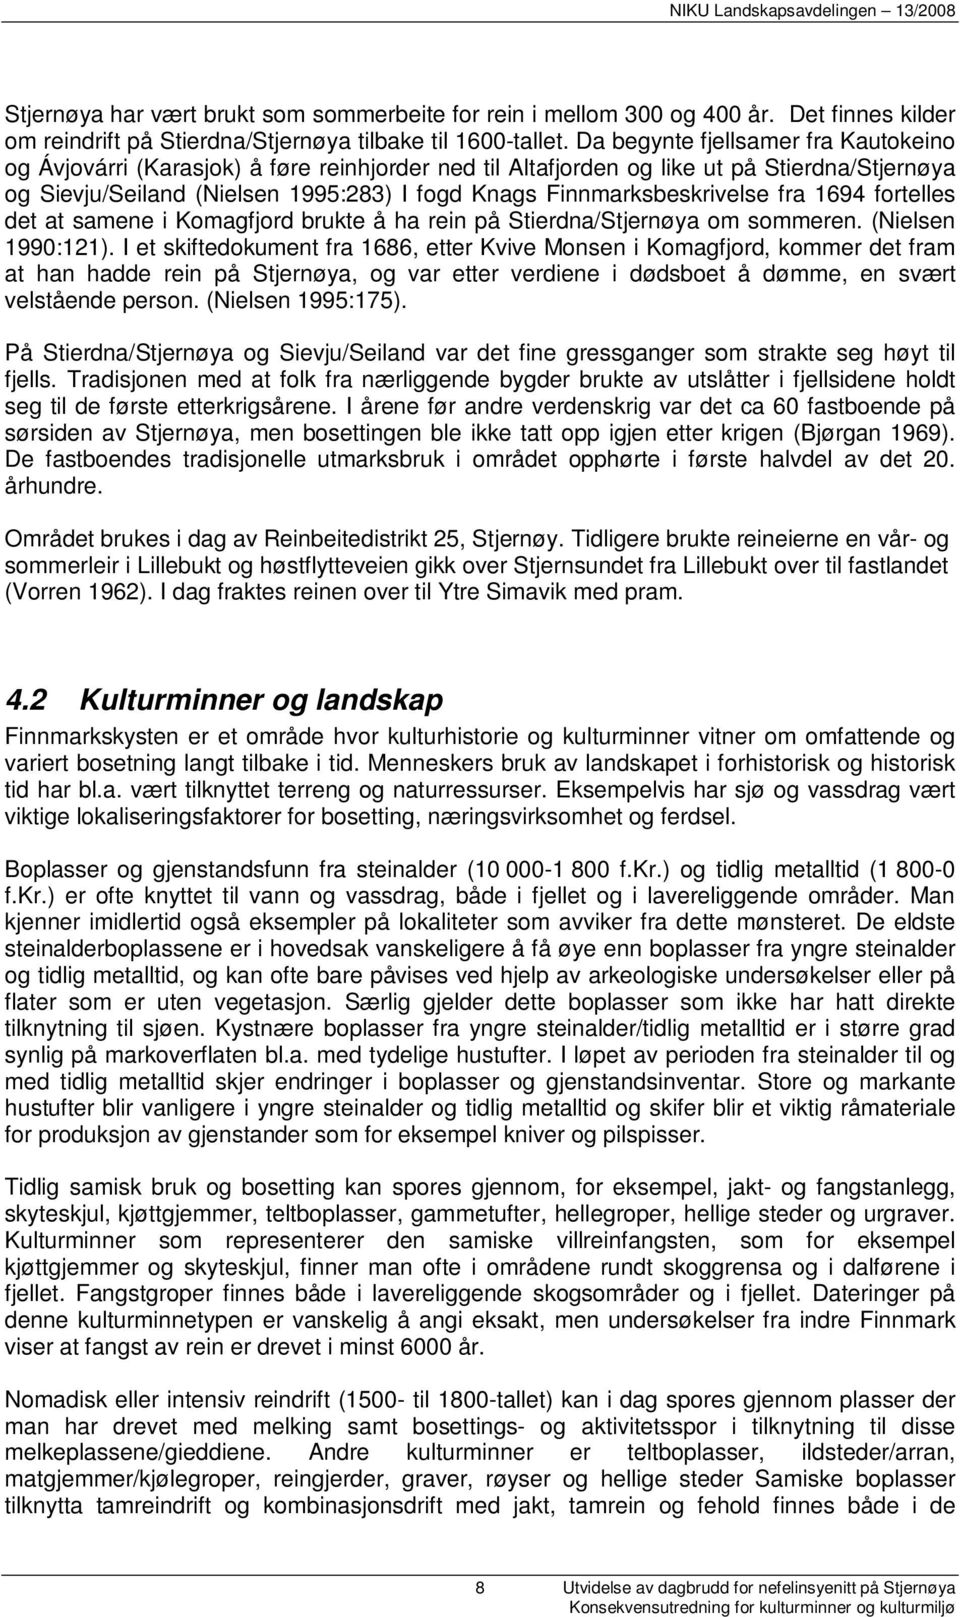 Finnmarksbeskrivelse fra 1694 fortelles det at samene i Komagfjord brukte å ha rein på Stierdna/Stjernøya om sommeren. (Nielsen 1990:121).